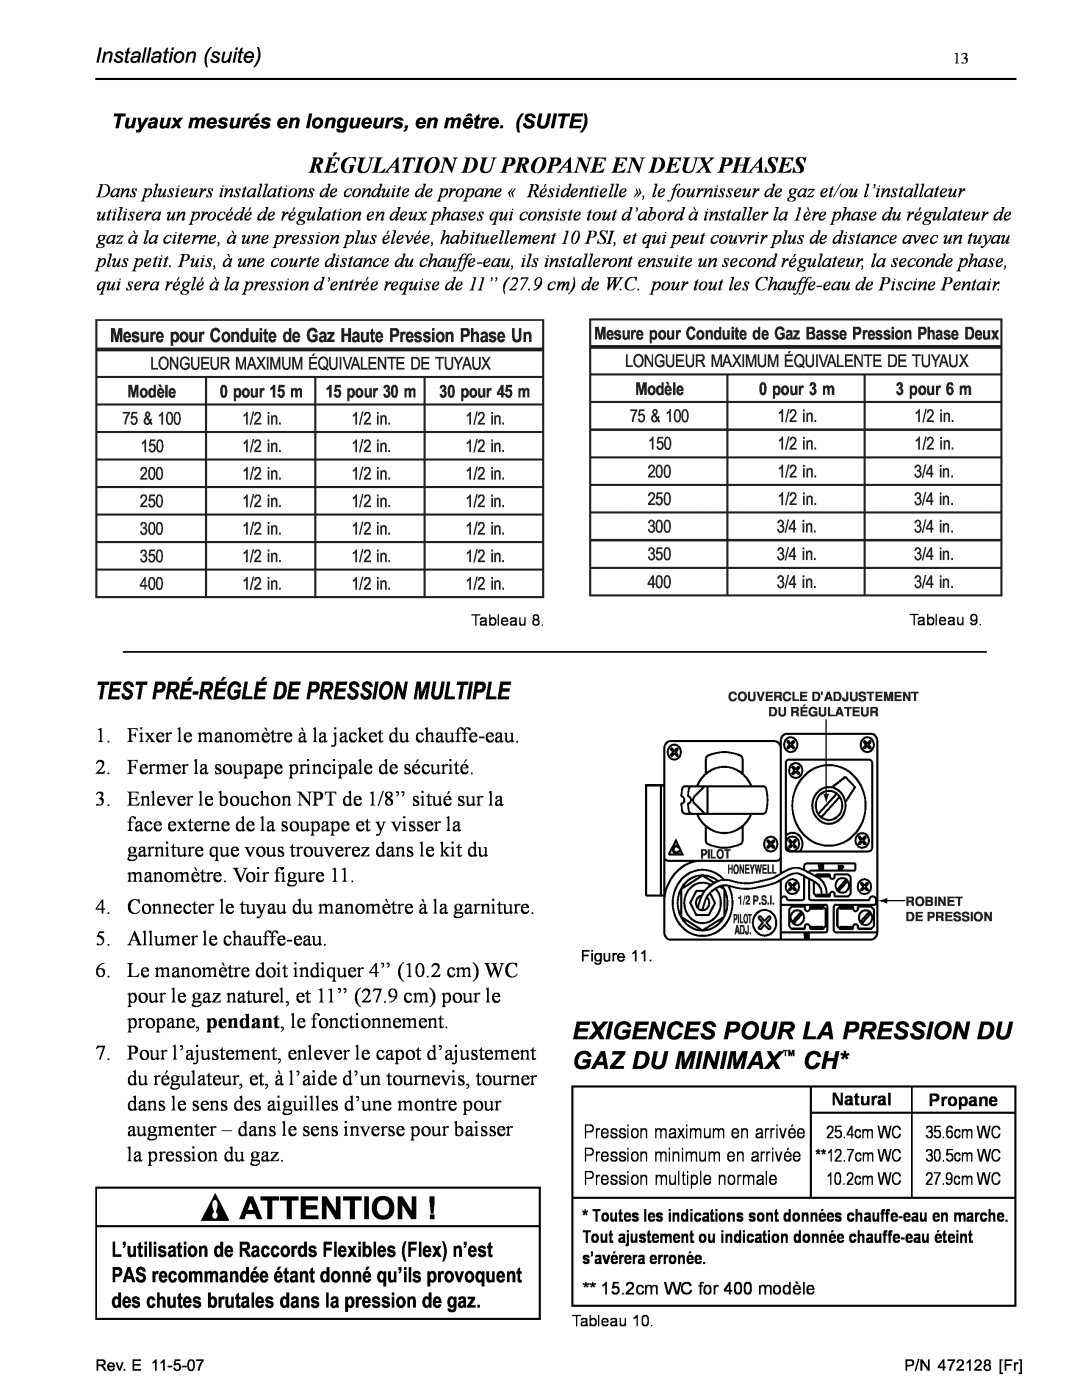 Pentair Hot Tub Test Pré-Réglé De Pression Multiple, Exigences Pour La Pression Du Gaz Du Minimax Ch, Installation suite 